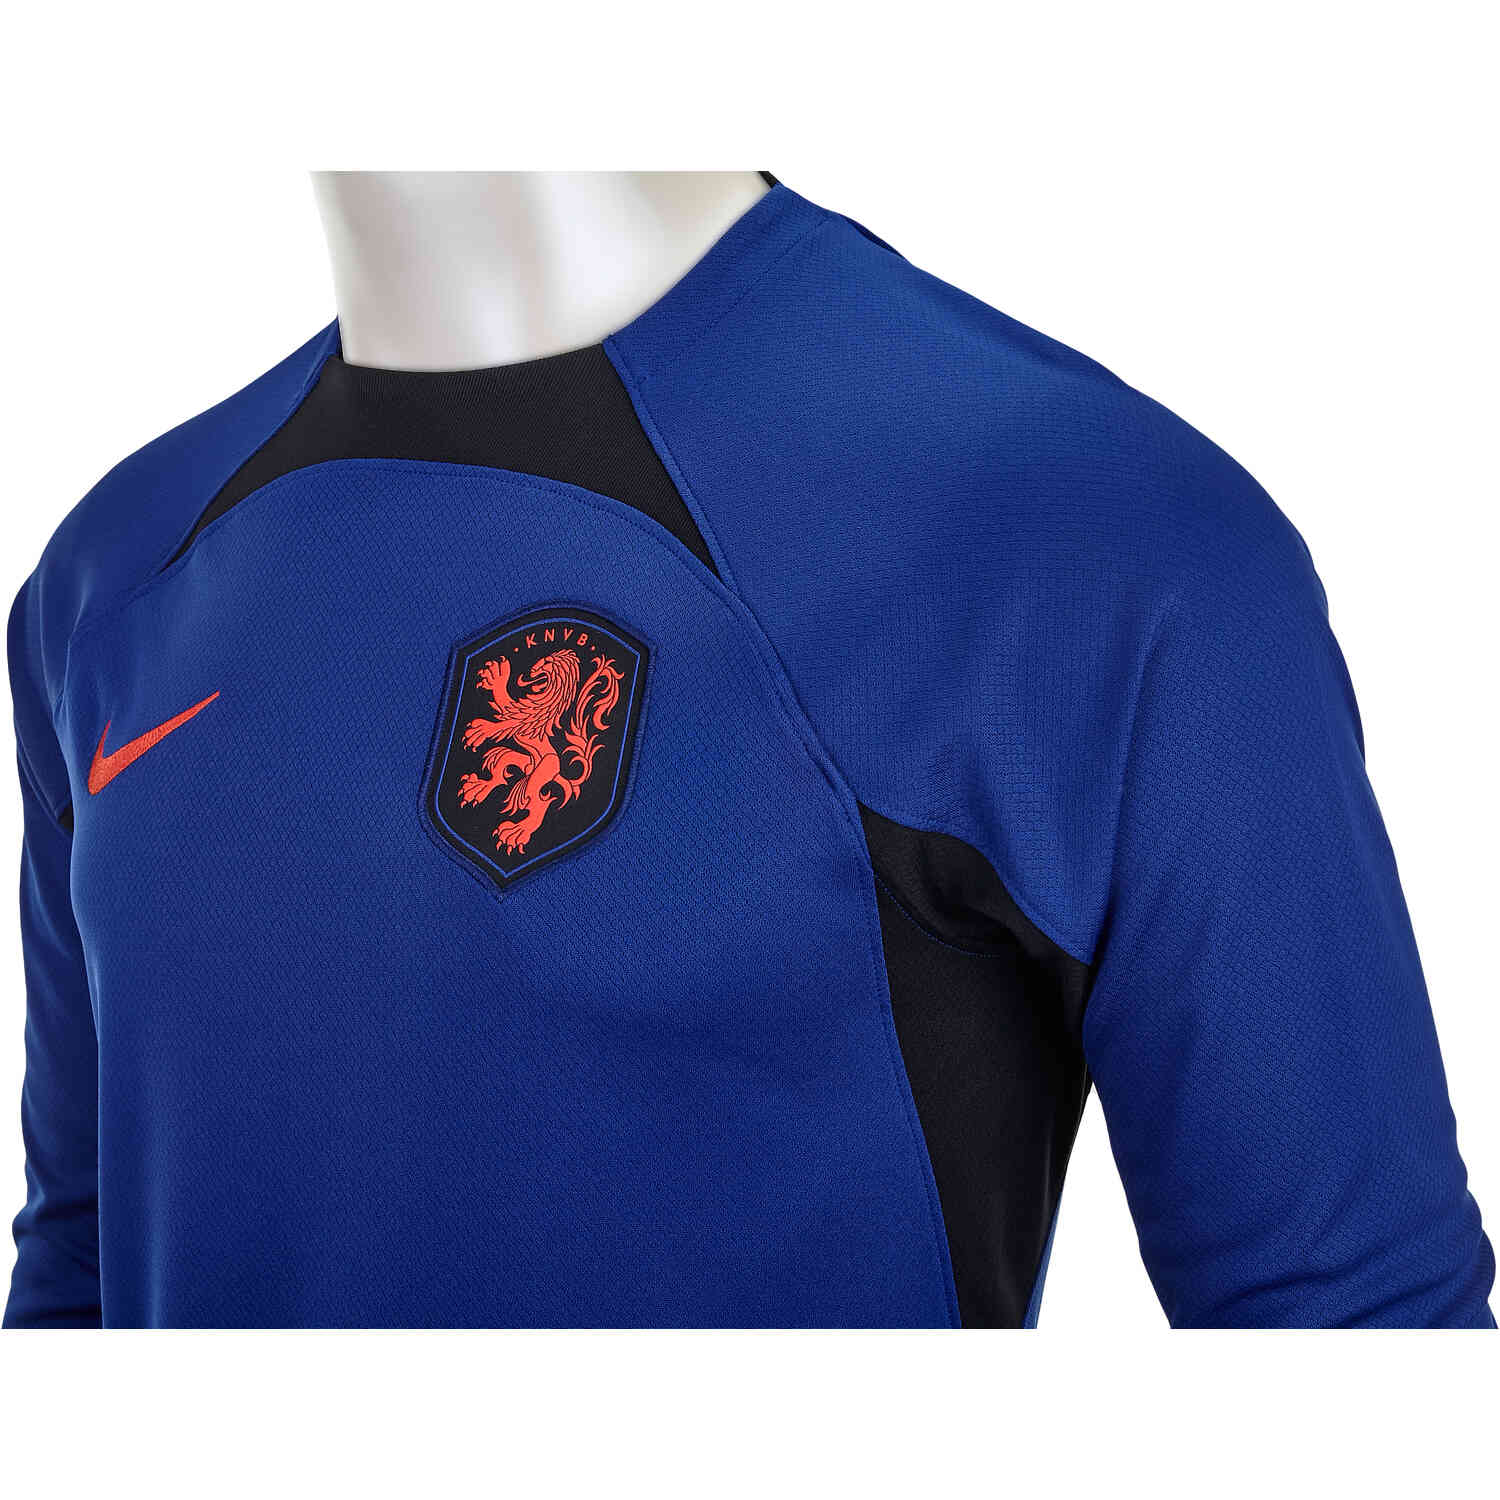 Nike Netherlands KNVB Soccer Jersey Size XL